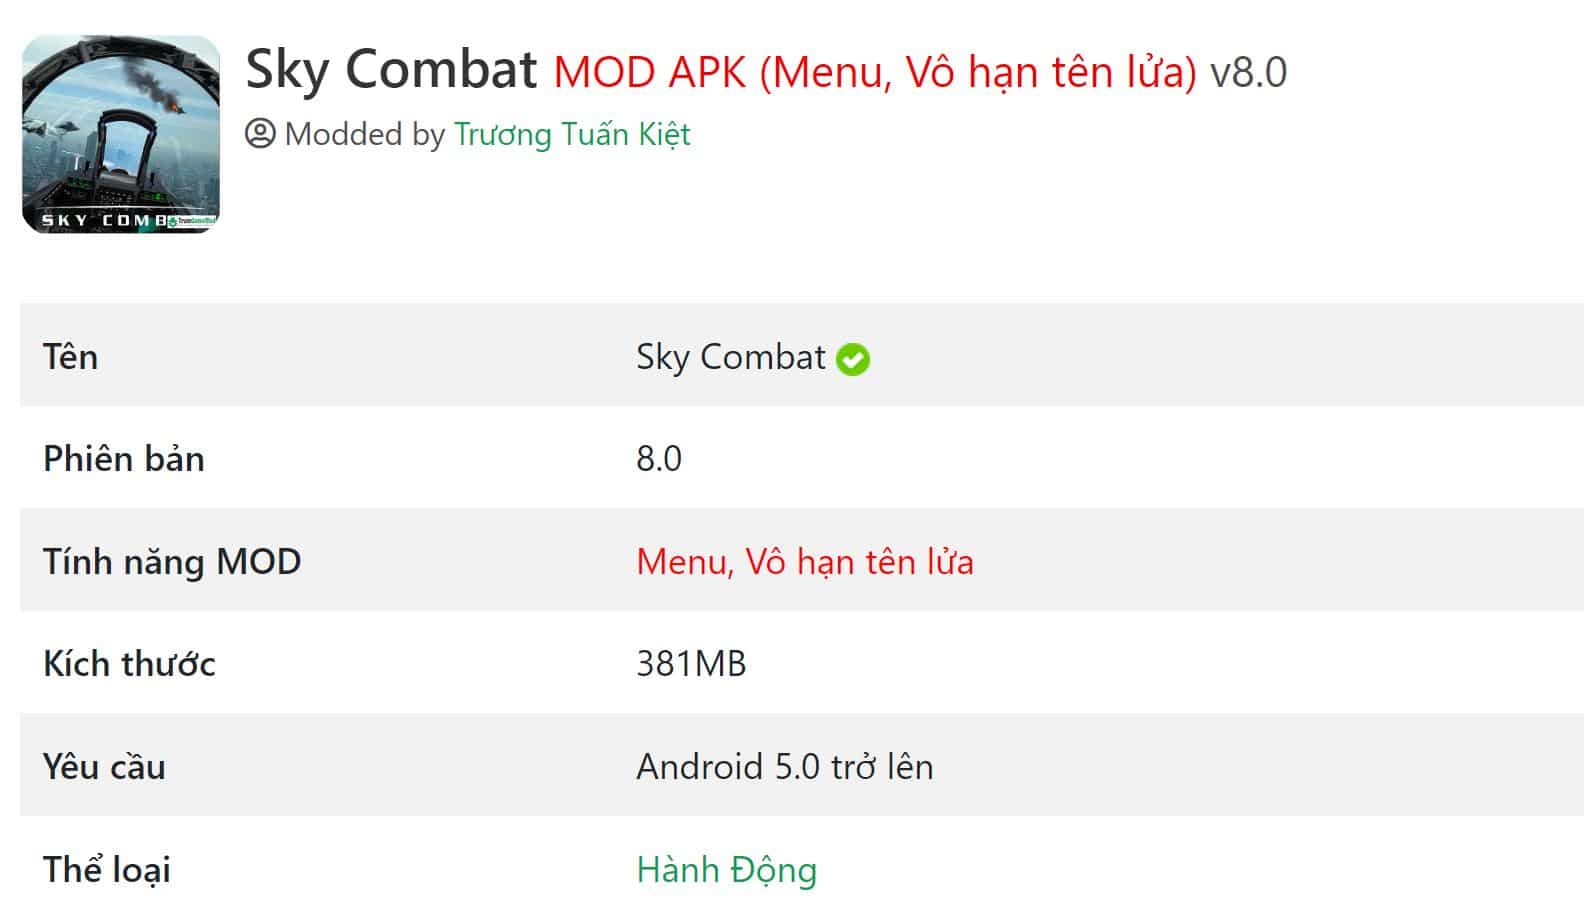 Sky Combat MOD APK v8.0